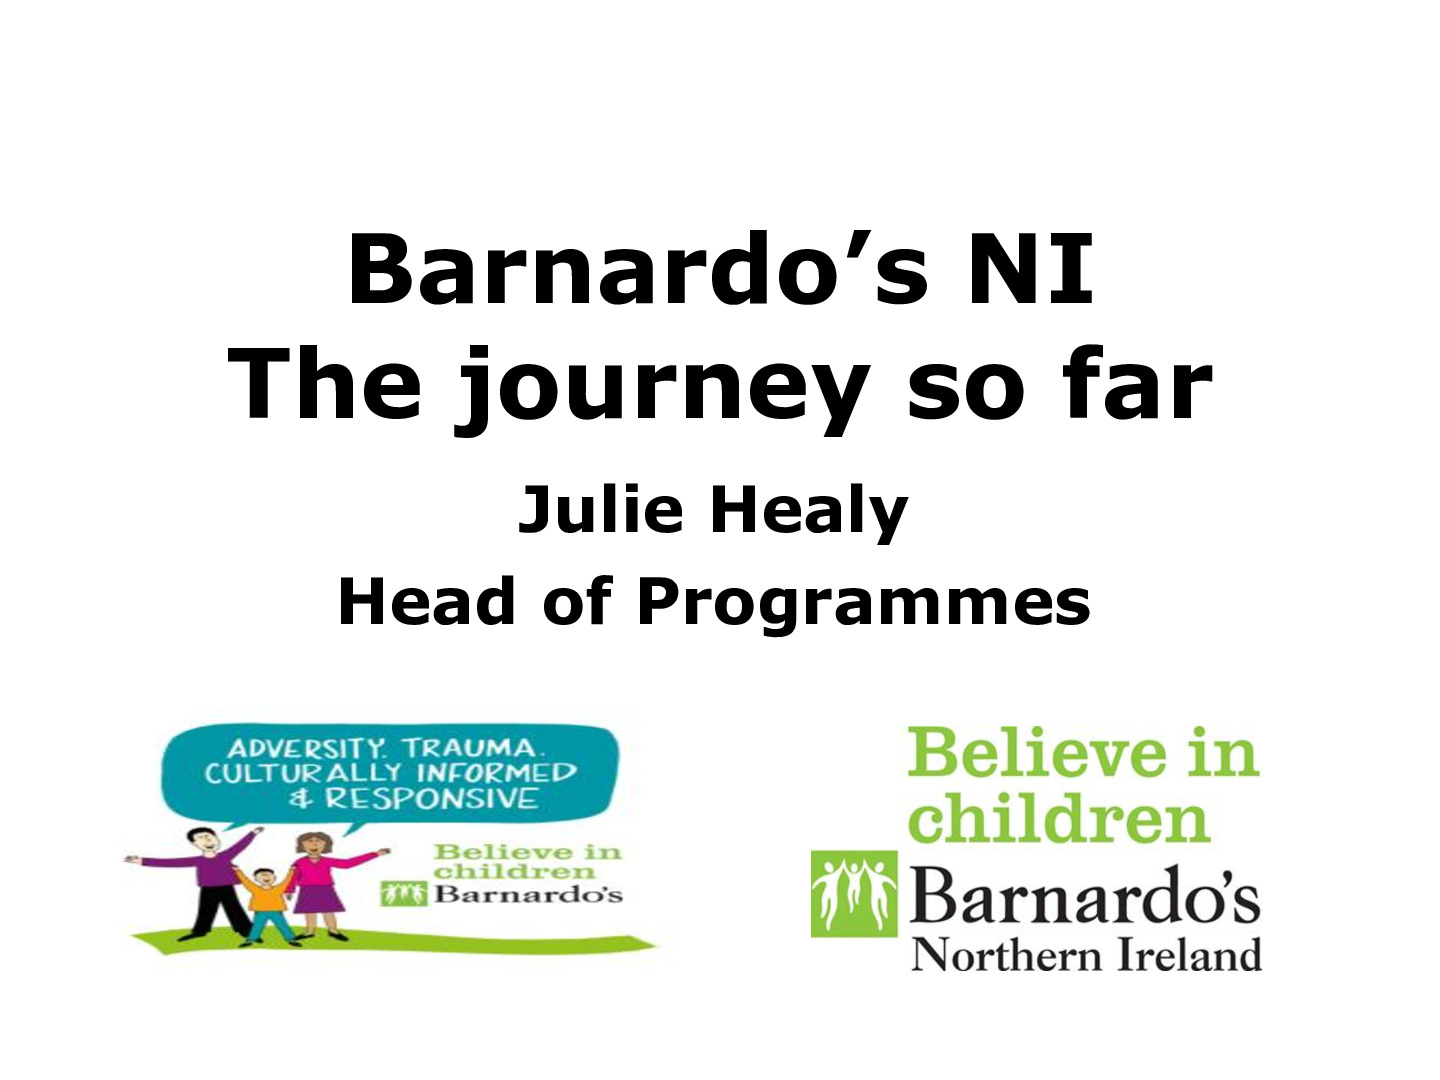 Be the change leadership programme Barnardo's Journey